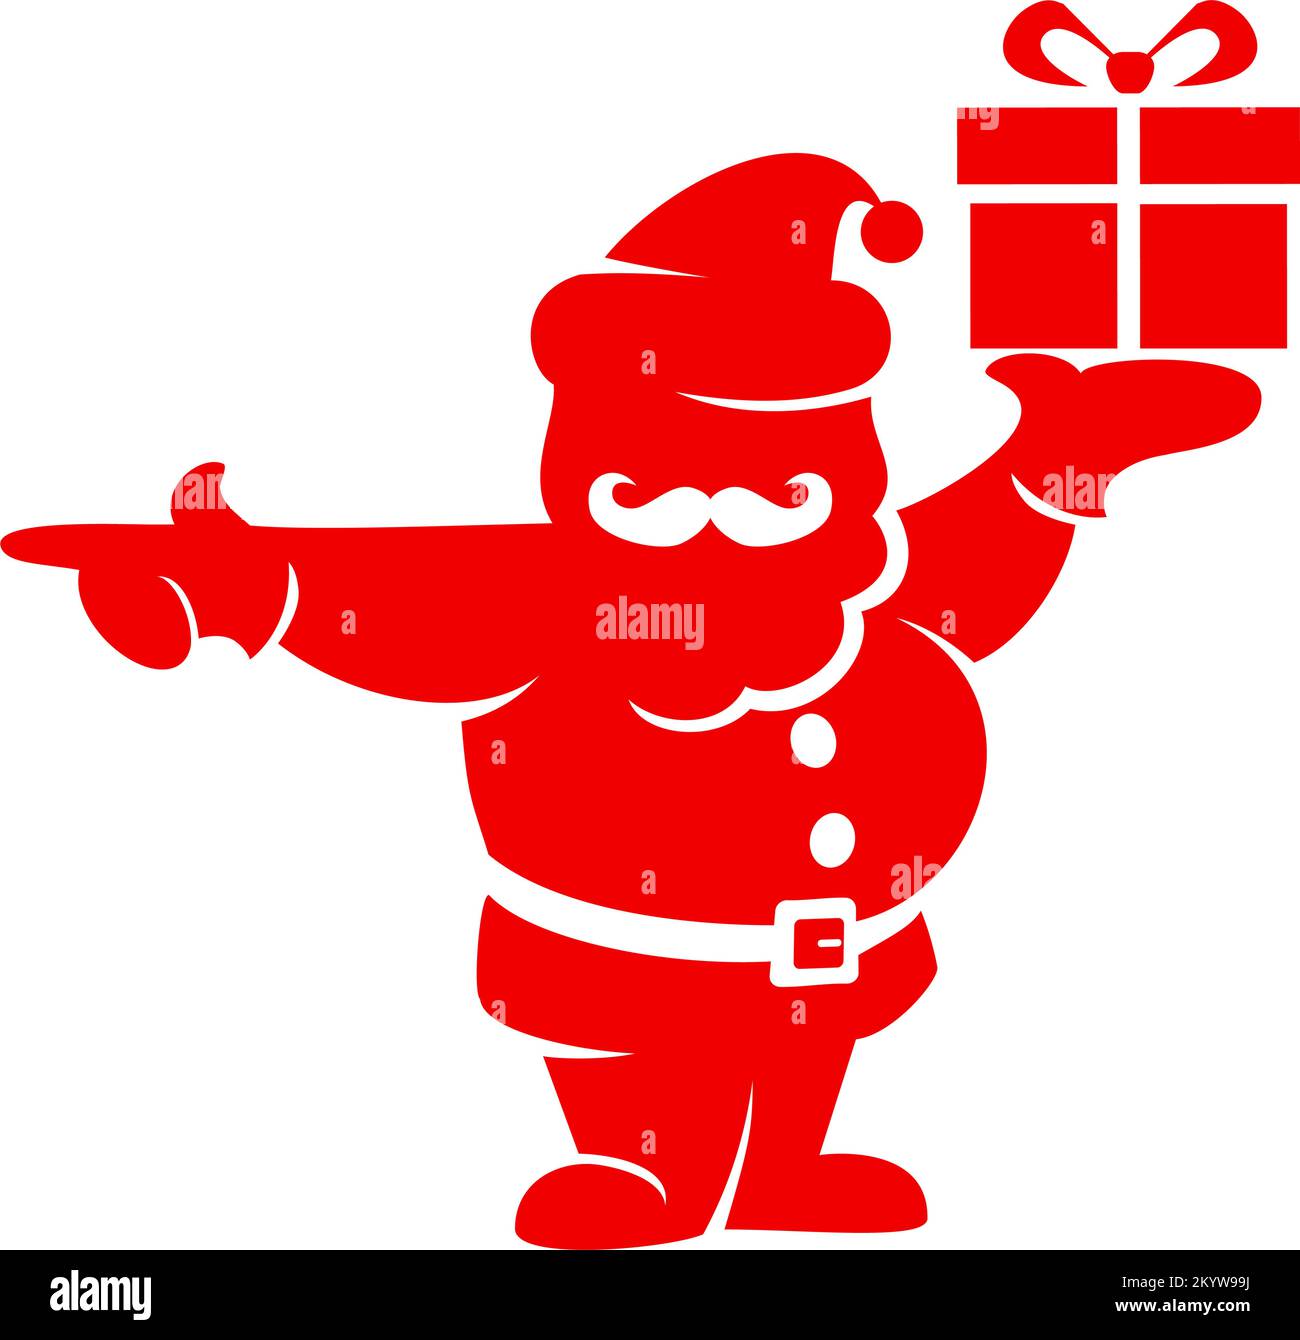 Die Silhouette des Weihnachtsmanns zeigt die Richtung an, an der Geschenke verteilt werden. Vektorsymbol auf transparentem Hintergrund Stock Vektor